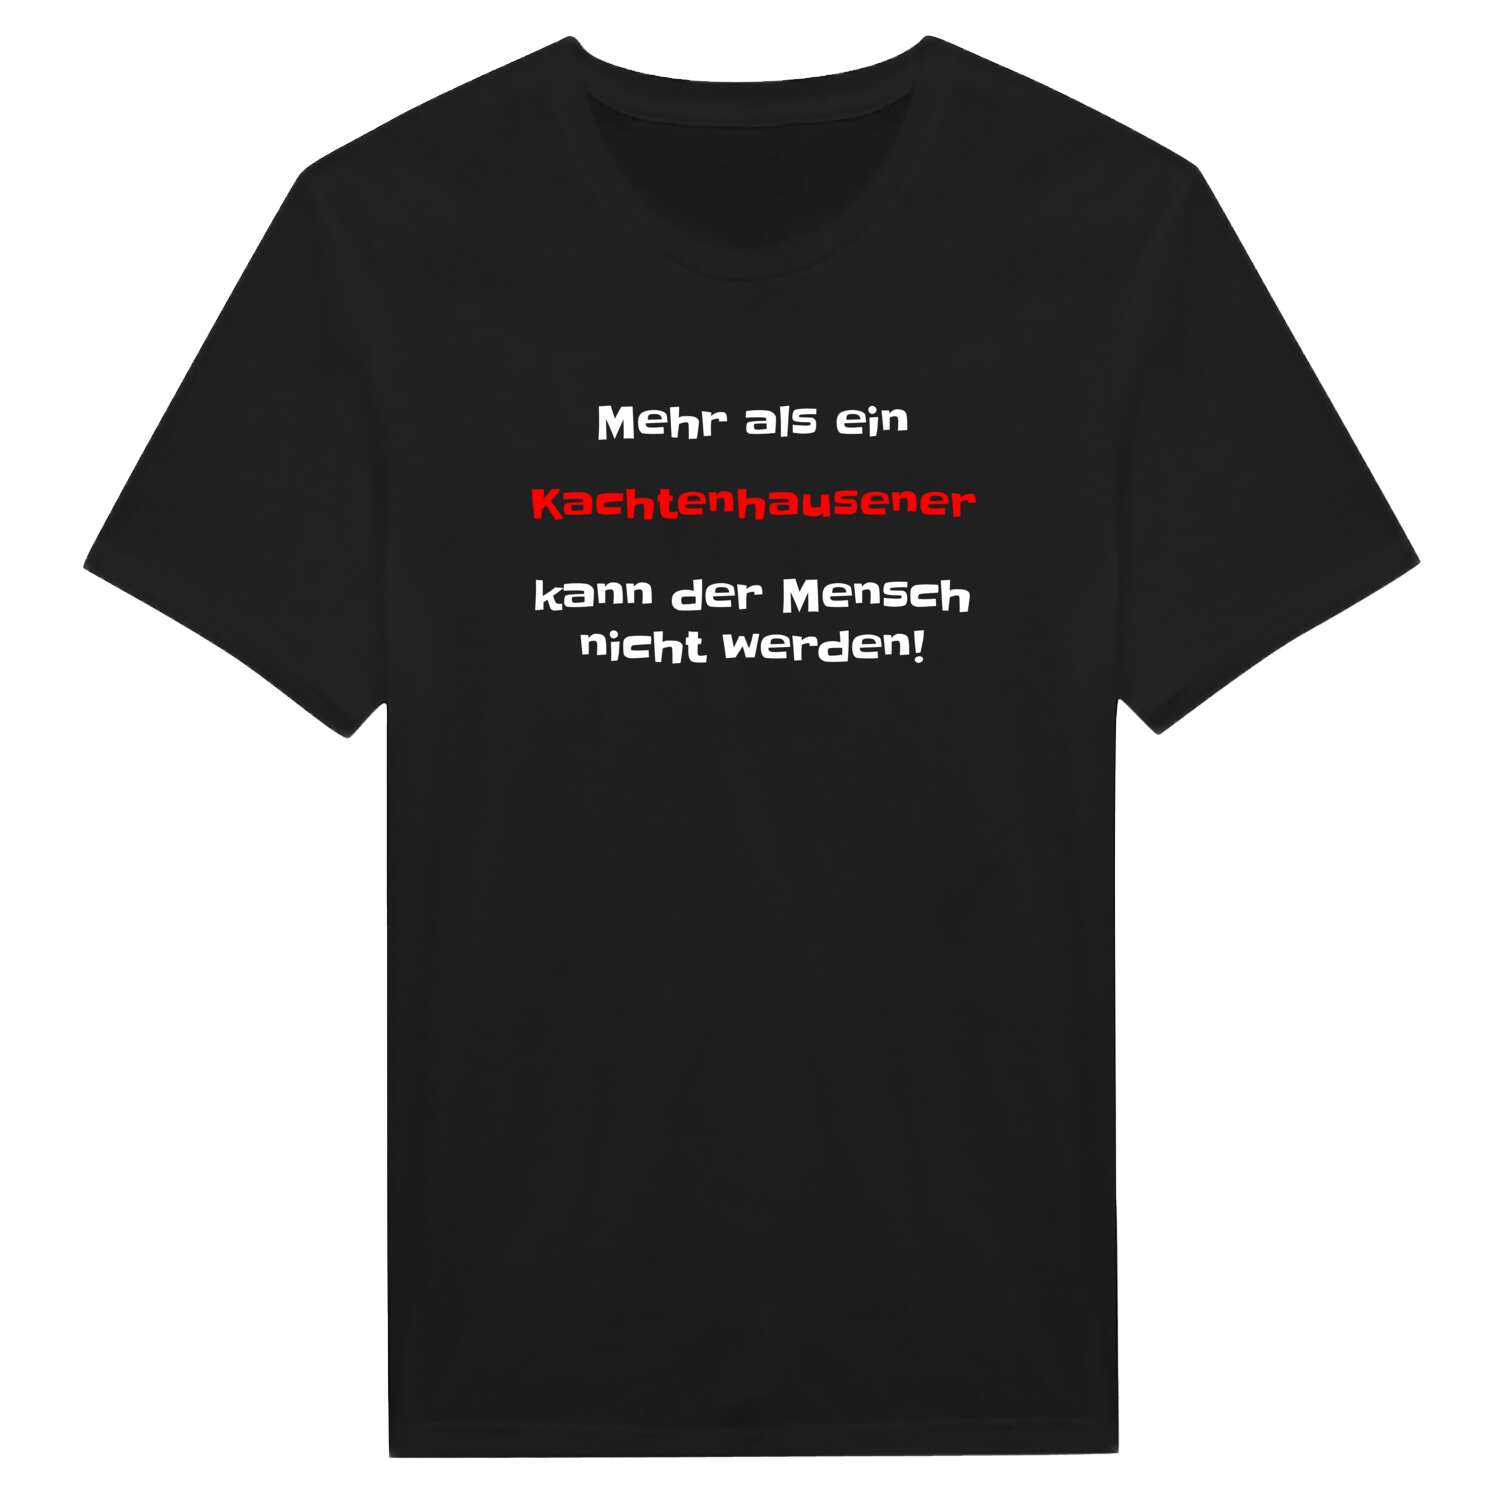 Kachtenhausen T-Shirt »Mehr als ein«